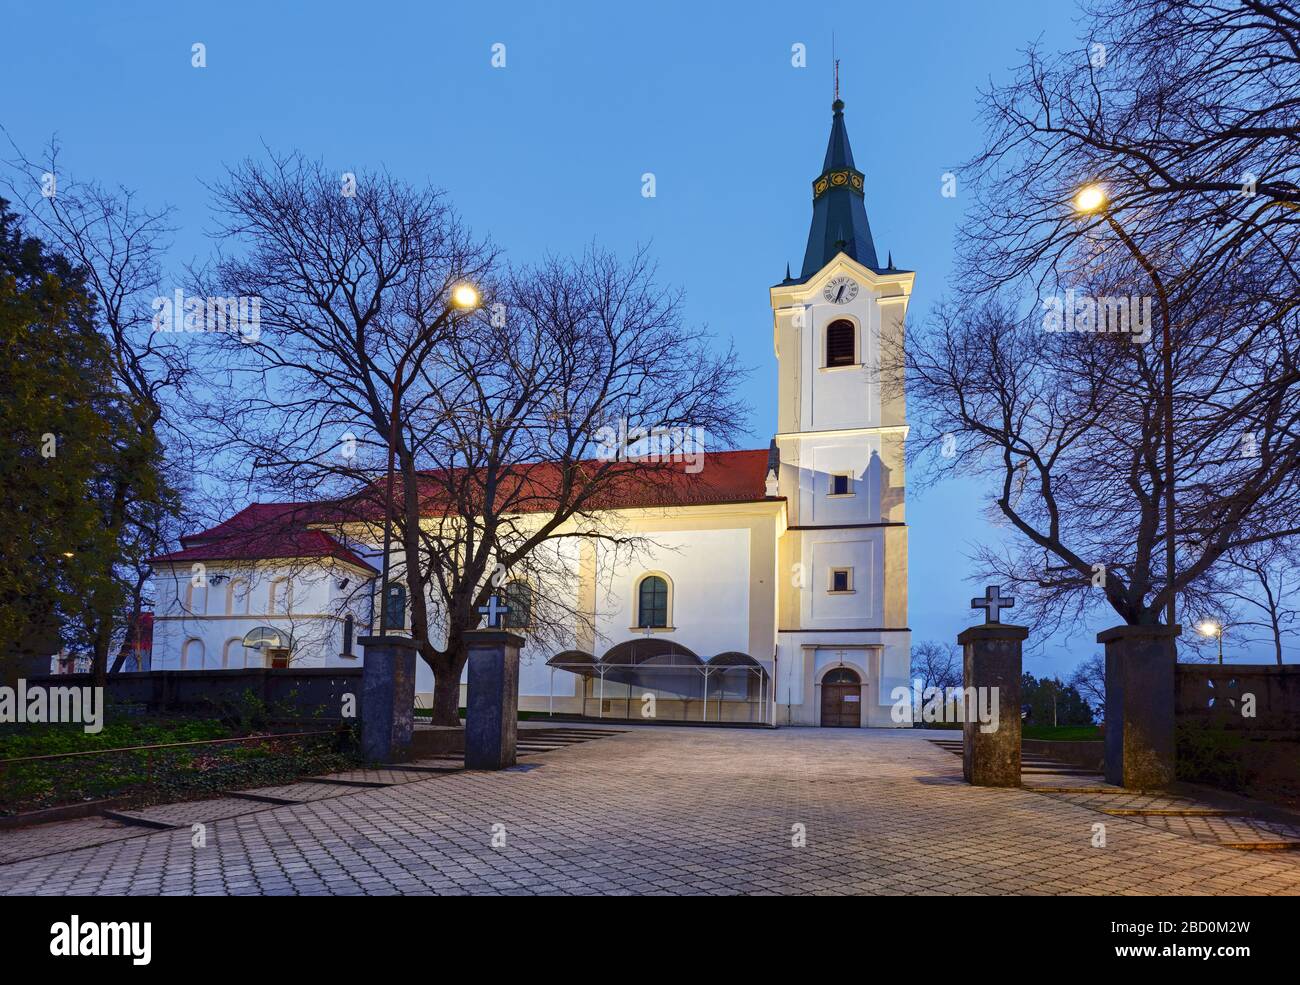 Slovakia at night, Church in Senec Stock Photo